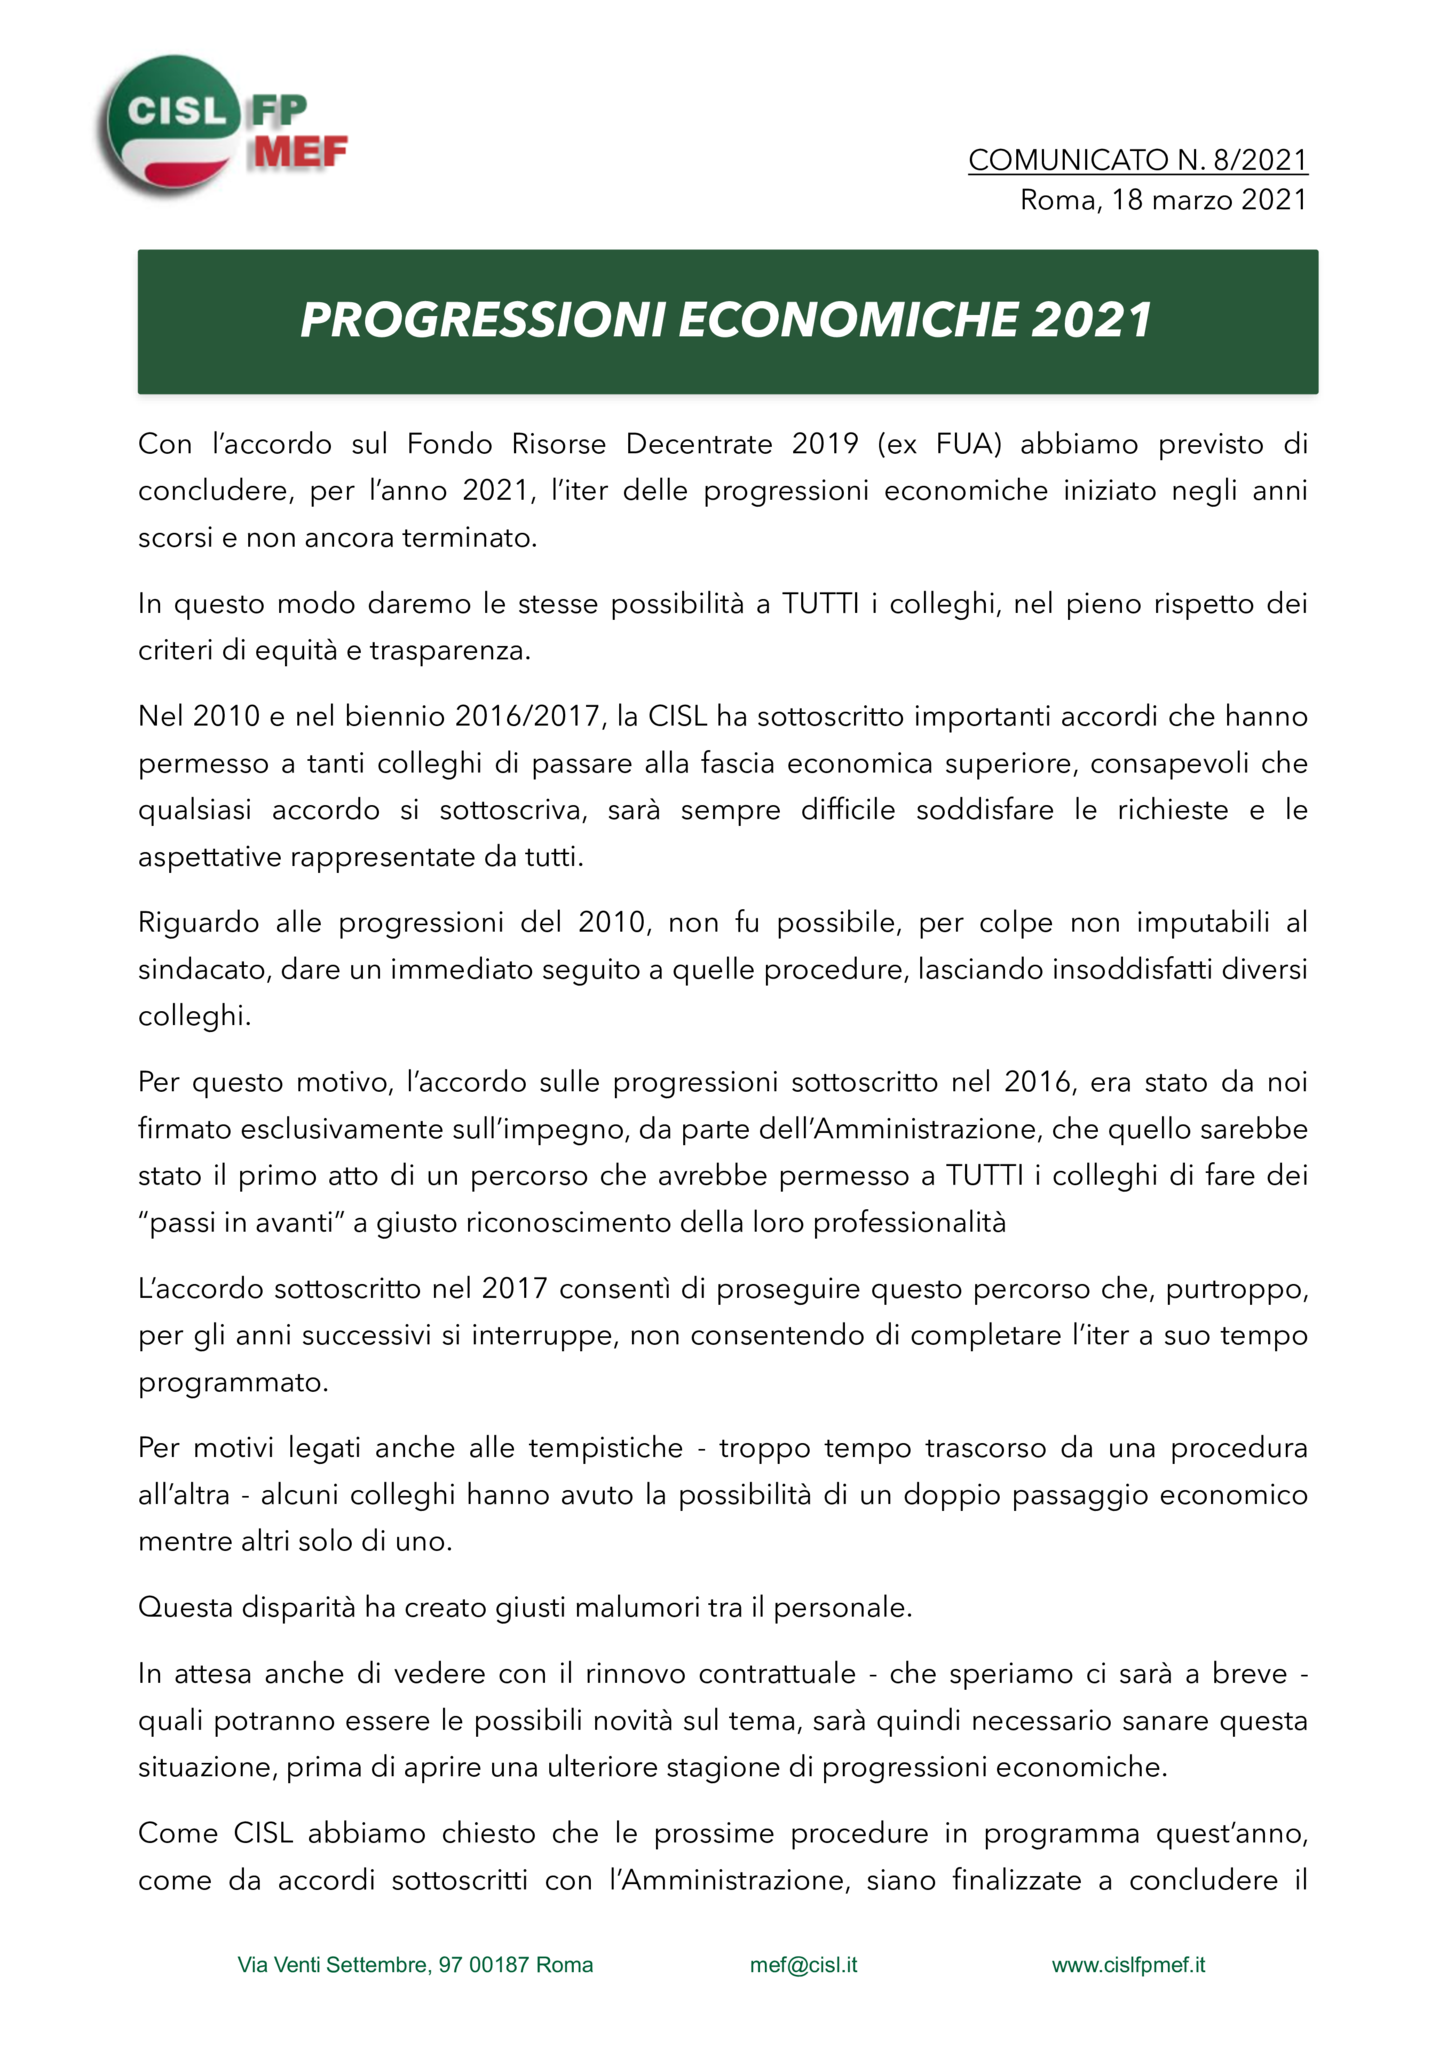 thumbnail of 821-COMUNICATO-progressioni-economiche-2021